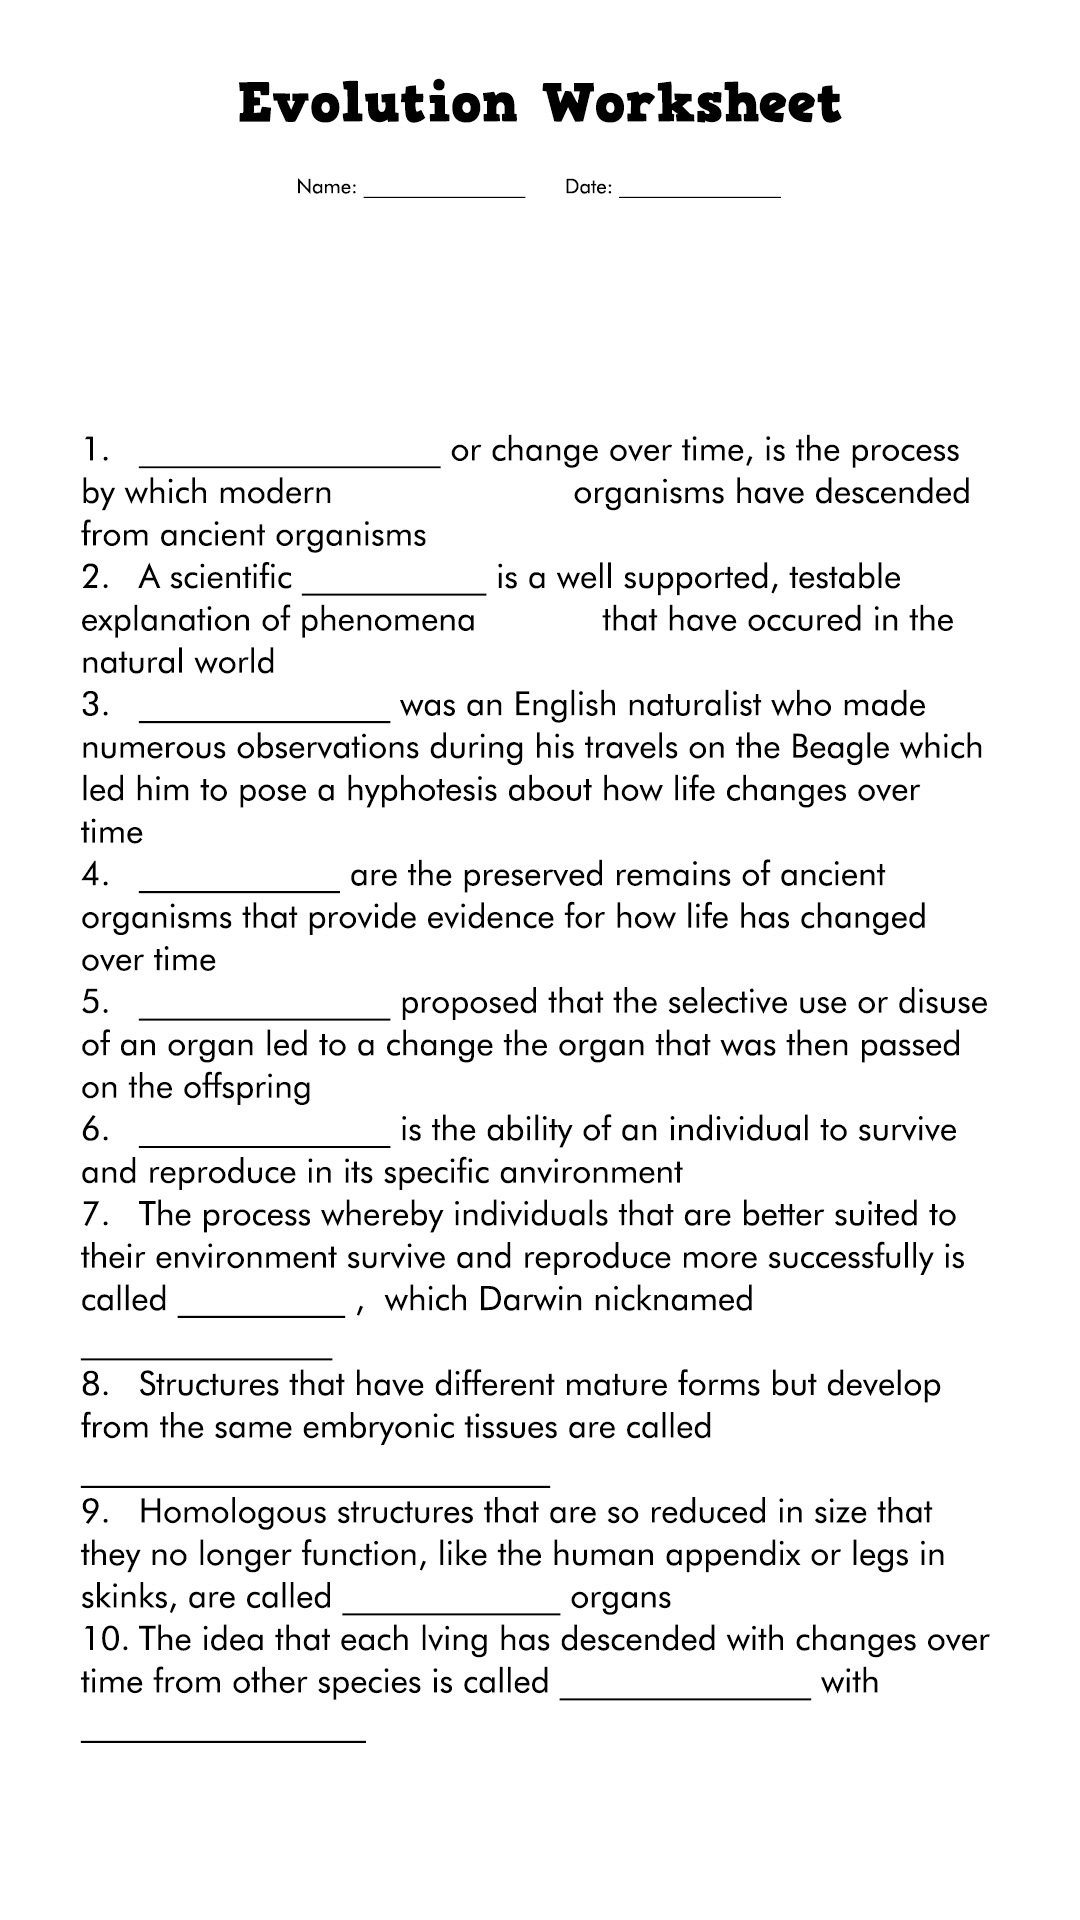 Evolution Worksheet Answers Biology Image